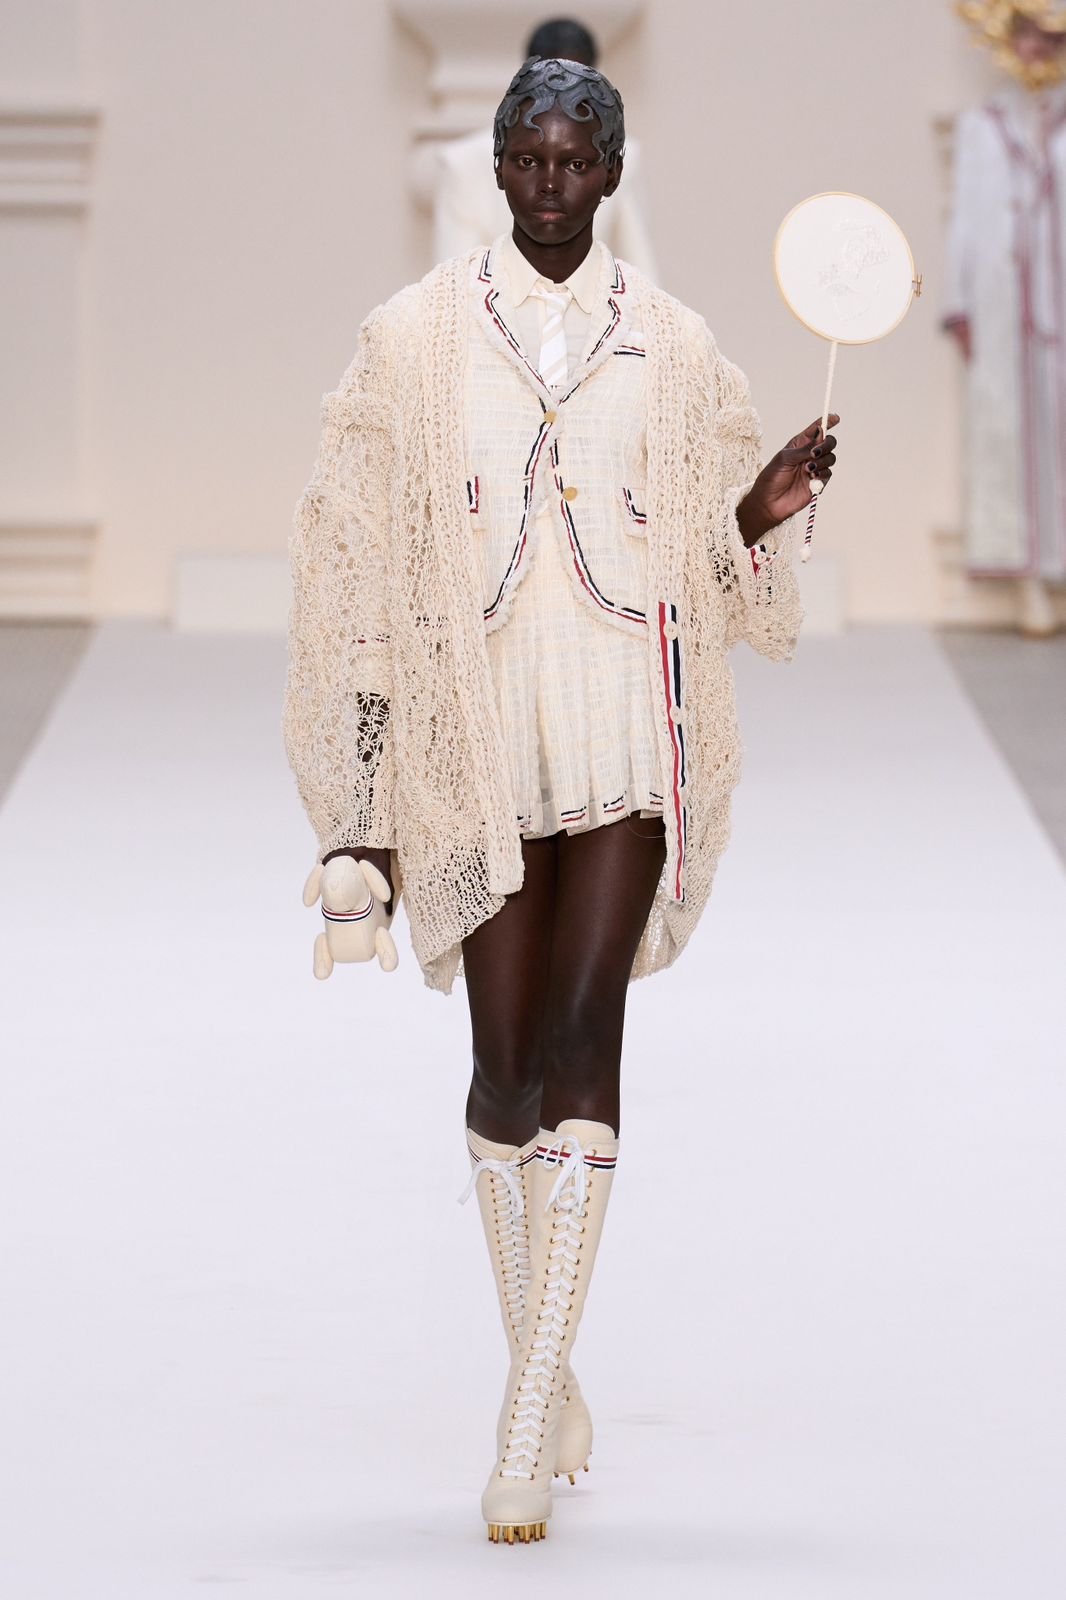 Paris Haute Couture: Thom Browne explora o lúdico e futurista em sua coleção